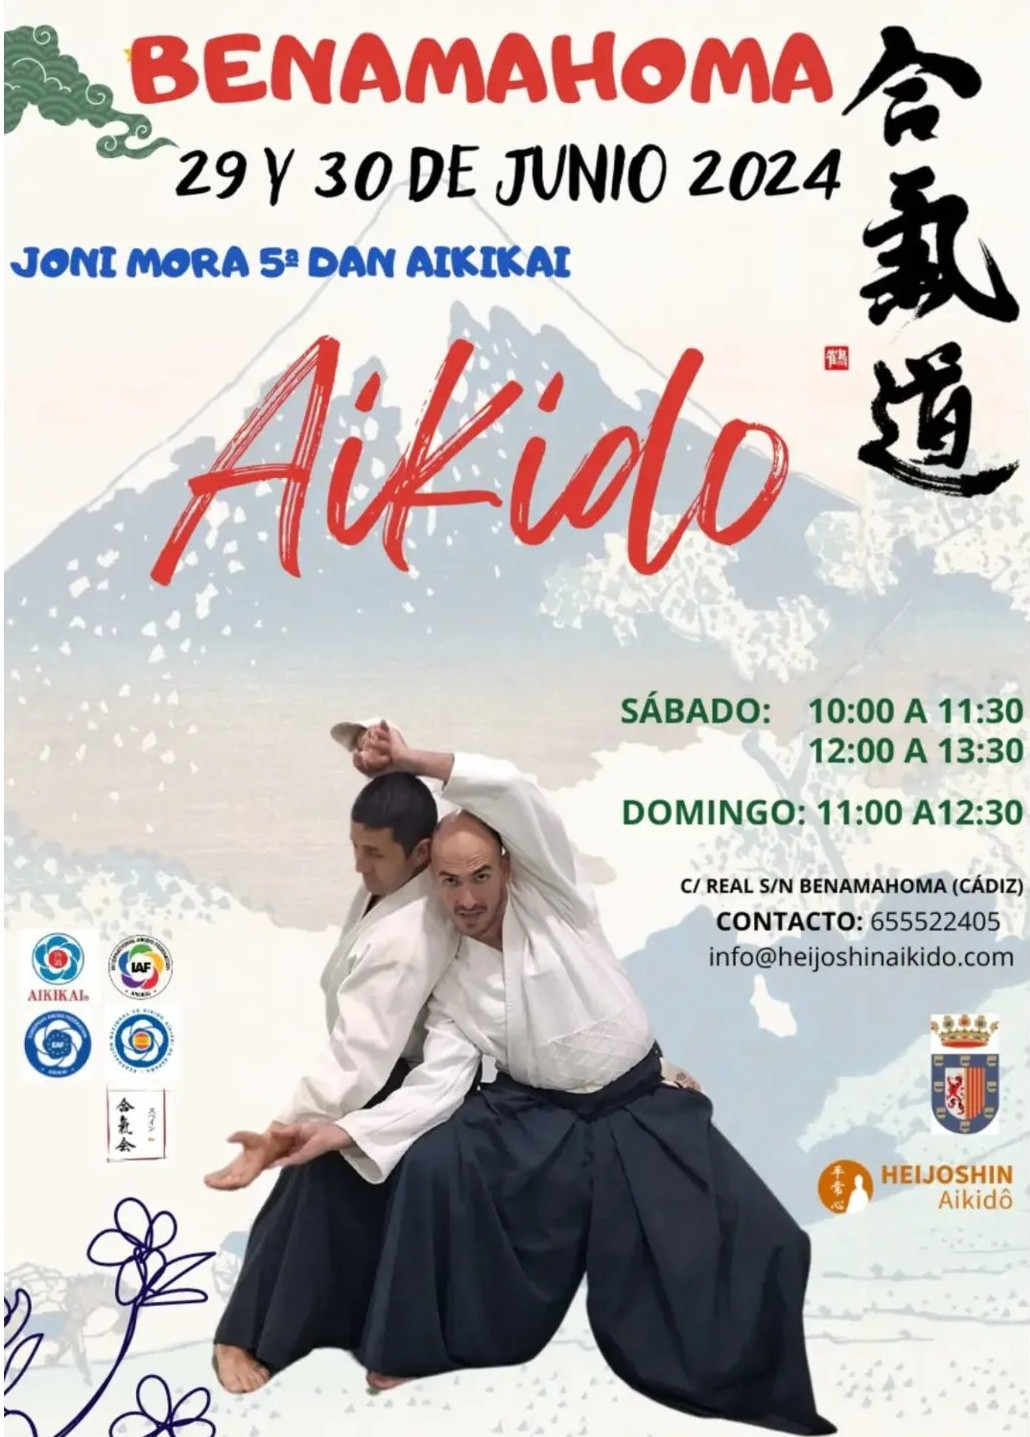 Curso de Aikido en Benamahoma 29 y 30 Junio 2024